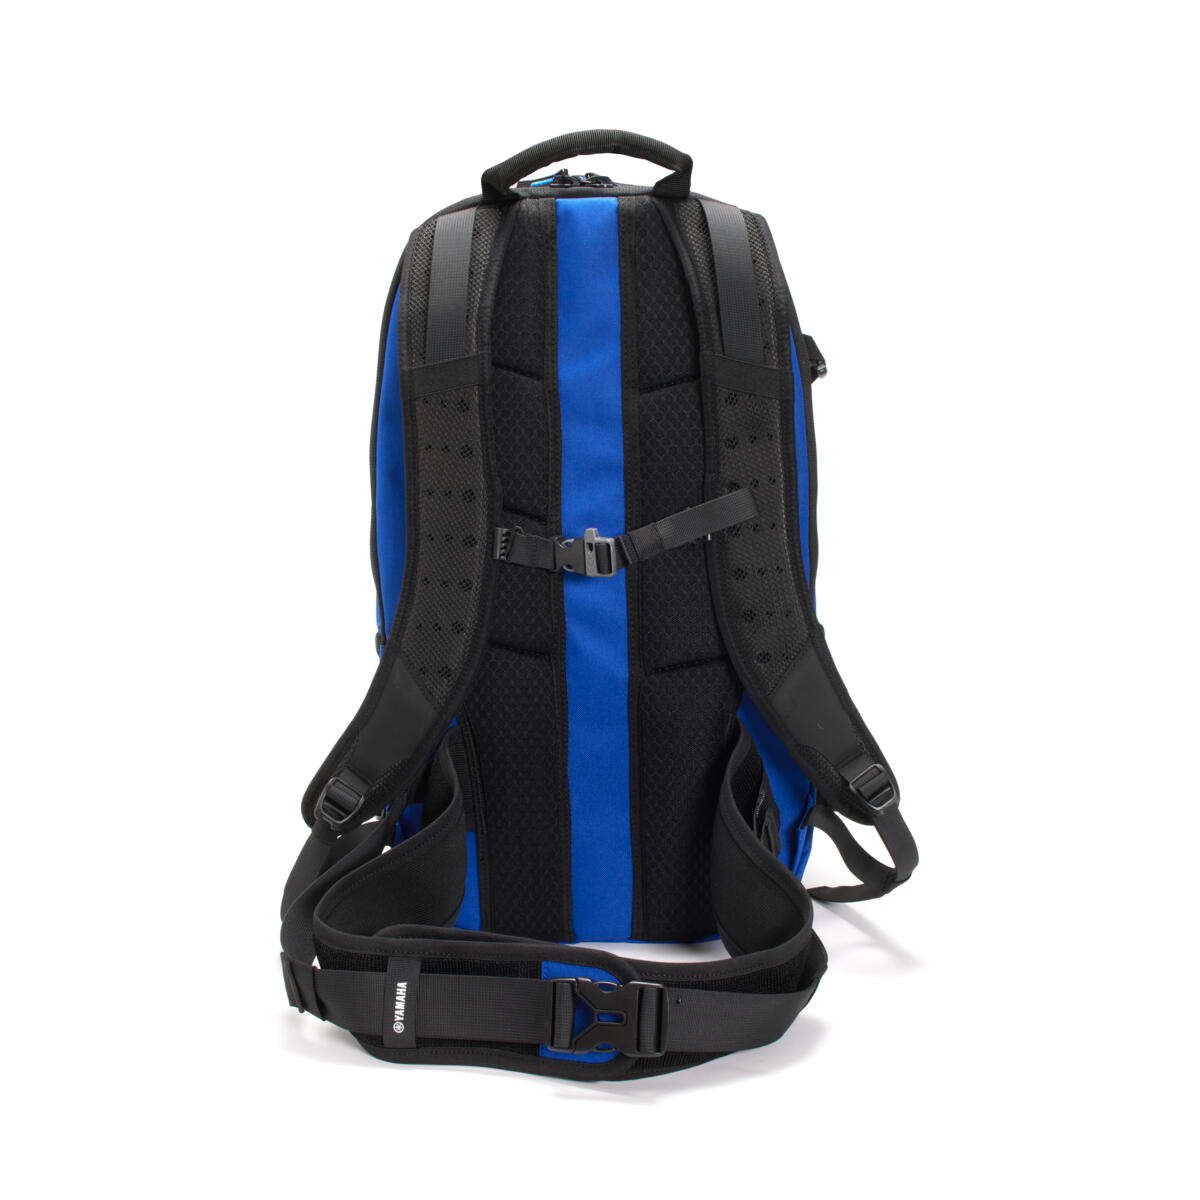 Mit seinem geräumigen Volumen von 20 Litern ist der Yamaha Adventure Backpack ein unverzichtbares Zubehör für längere Bergtouren oder Trails. Sein ergonomisches Design umfasst einen gepolsterten Hüftgurt sowie einstellbare Brust- und Taillenriemen für eine perfekte Passform und hohen Tragekomfort. Der integrierte, CE-geprüfte Rückenprotektor bietet zusätzliche Sicherheit. 